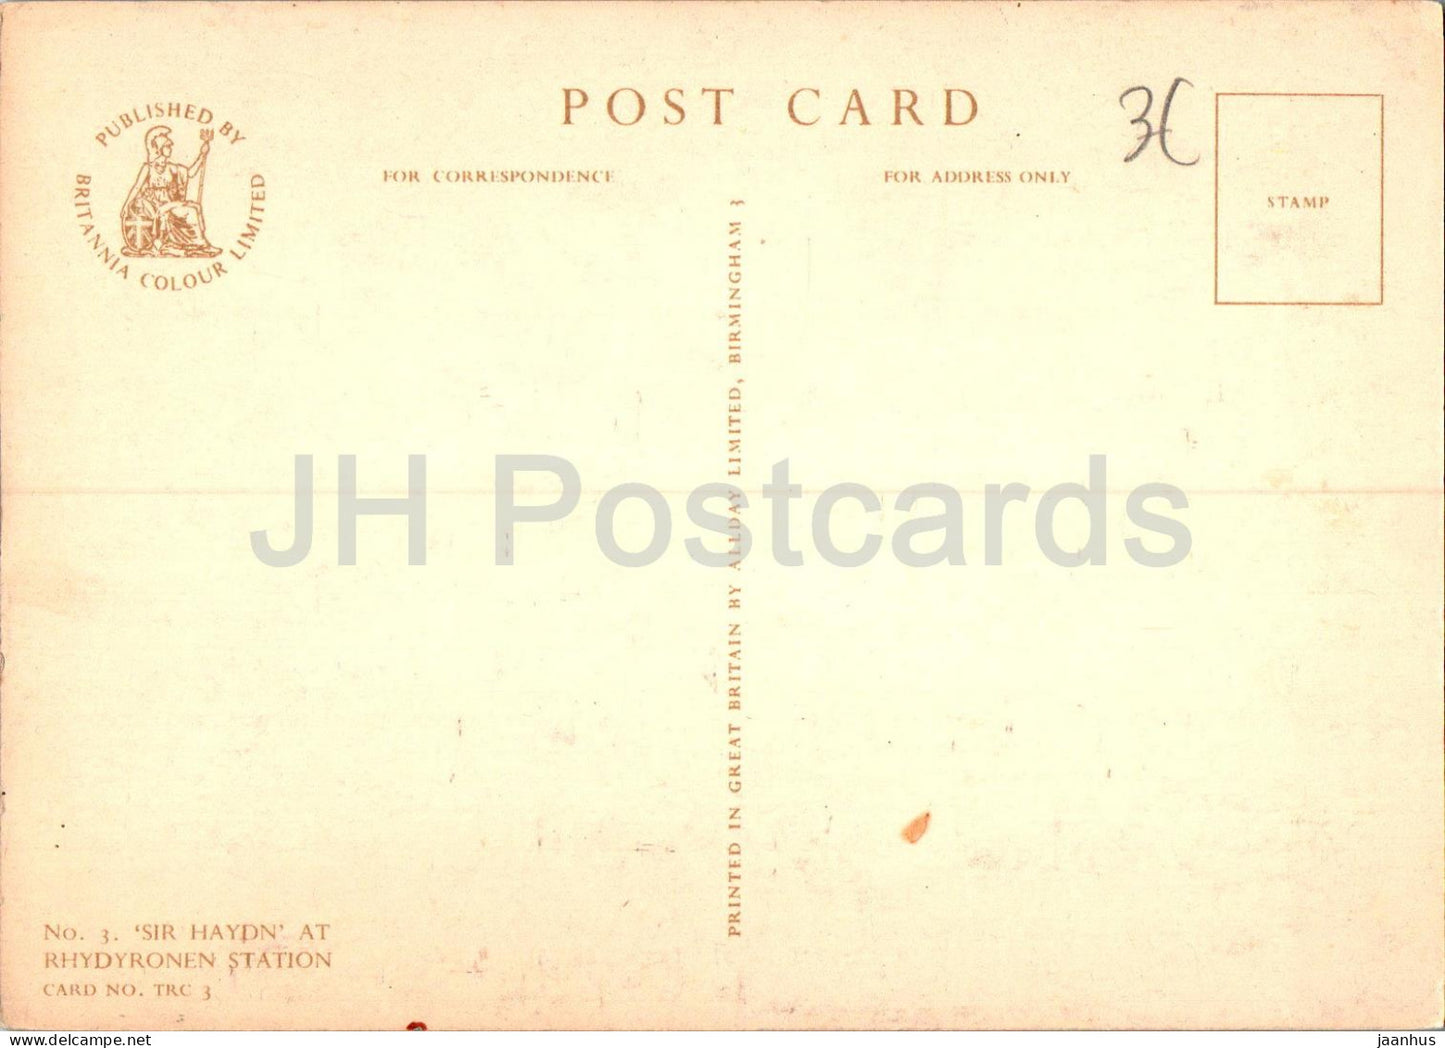 Sir Haydn am Bahnhof Rhydyronen – Zug – Lokomotive – 3 – alte Postkarte – Wales – Vereinigtes Königreich – unbenutzt 